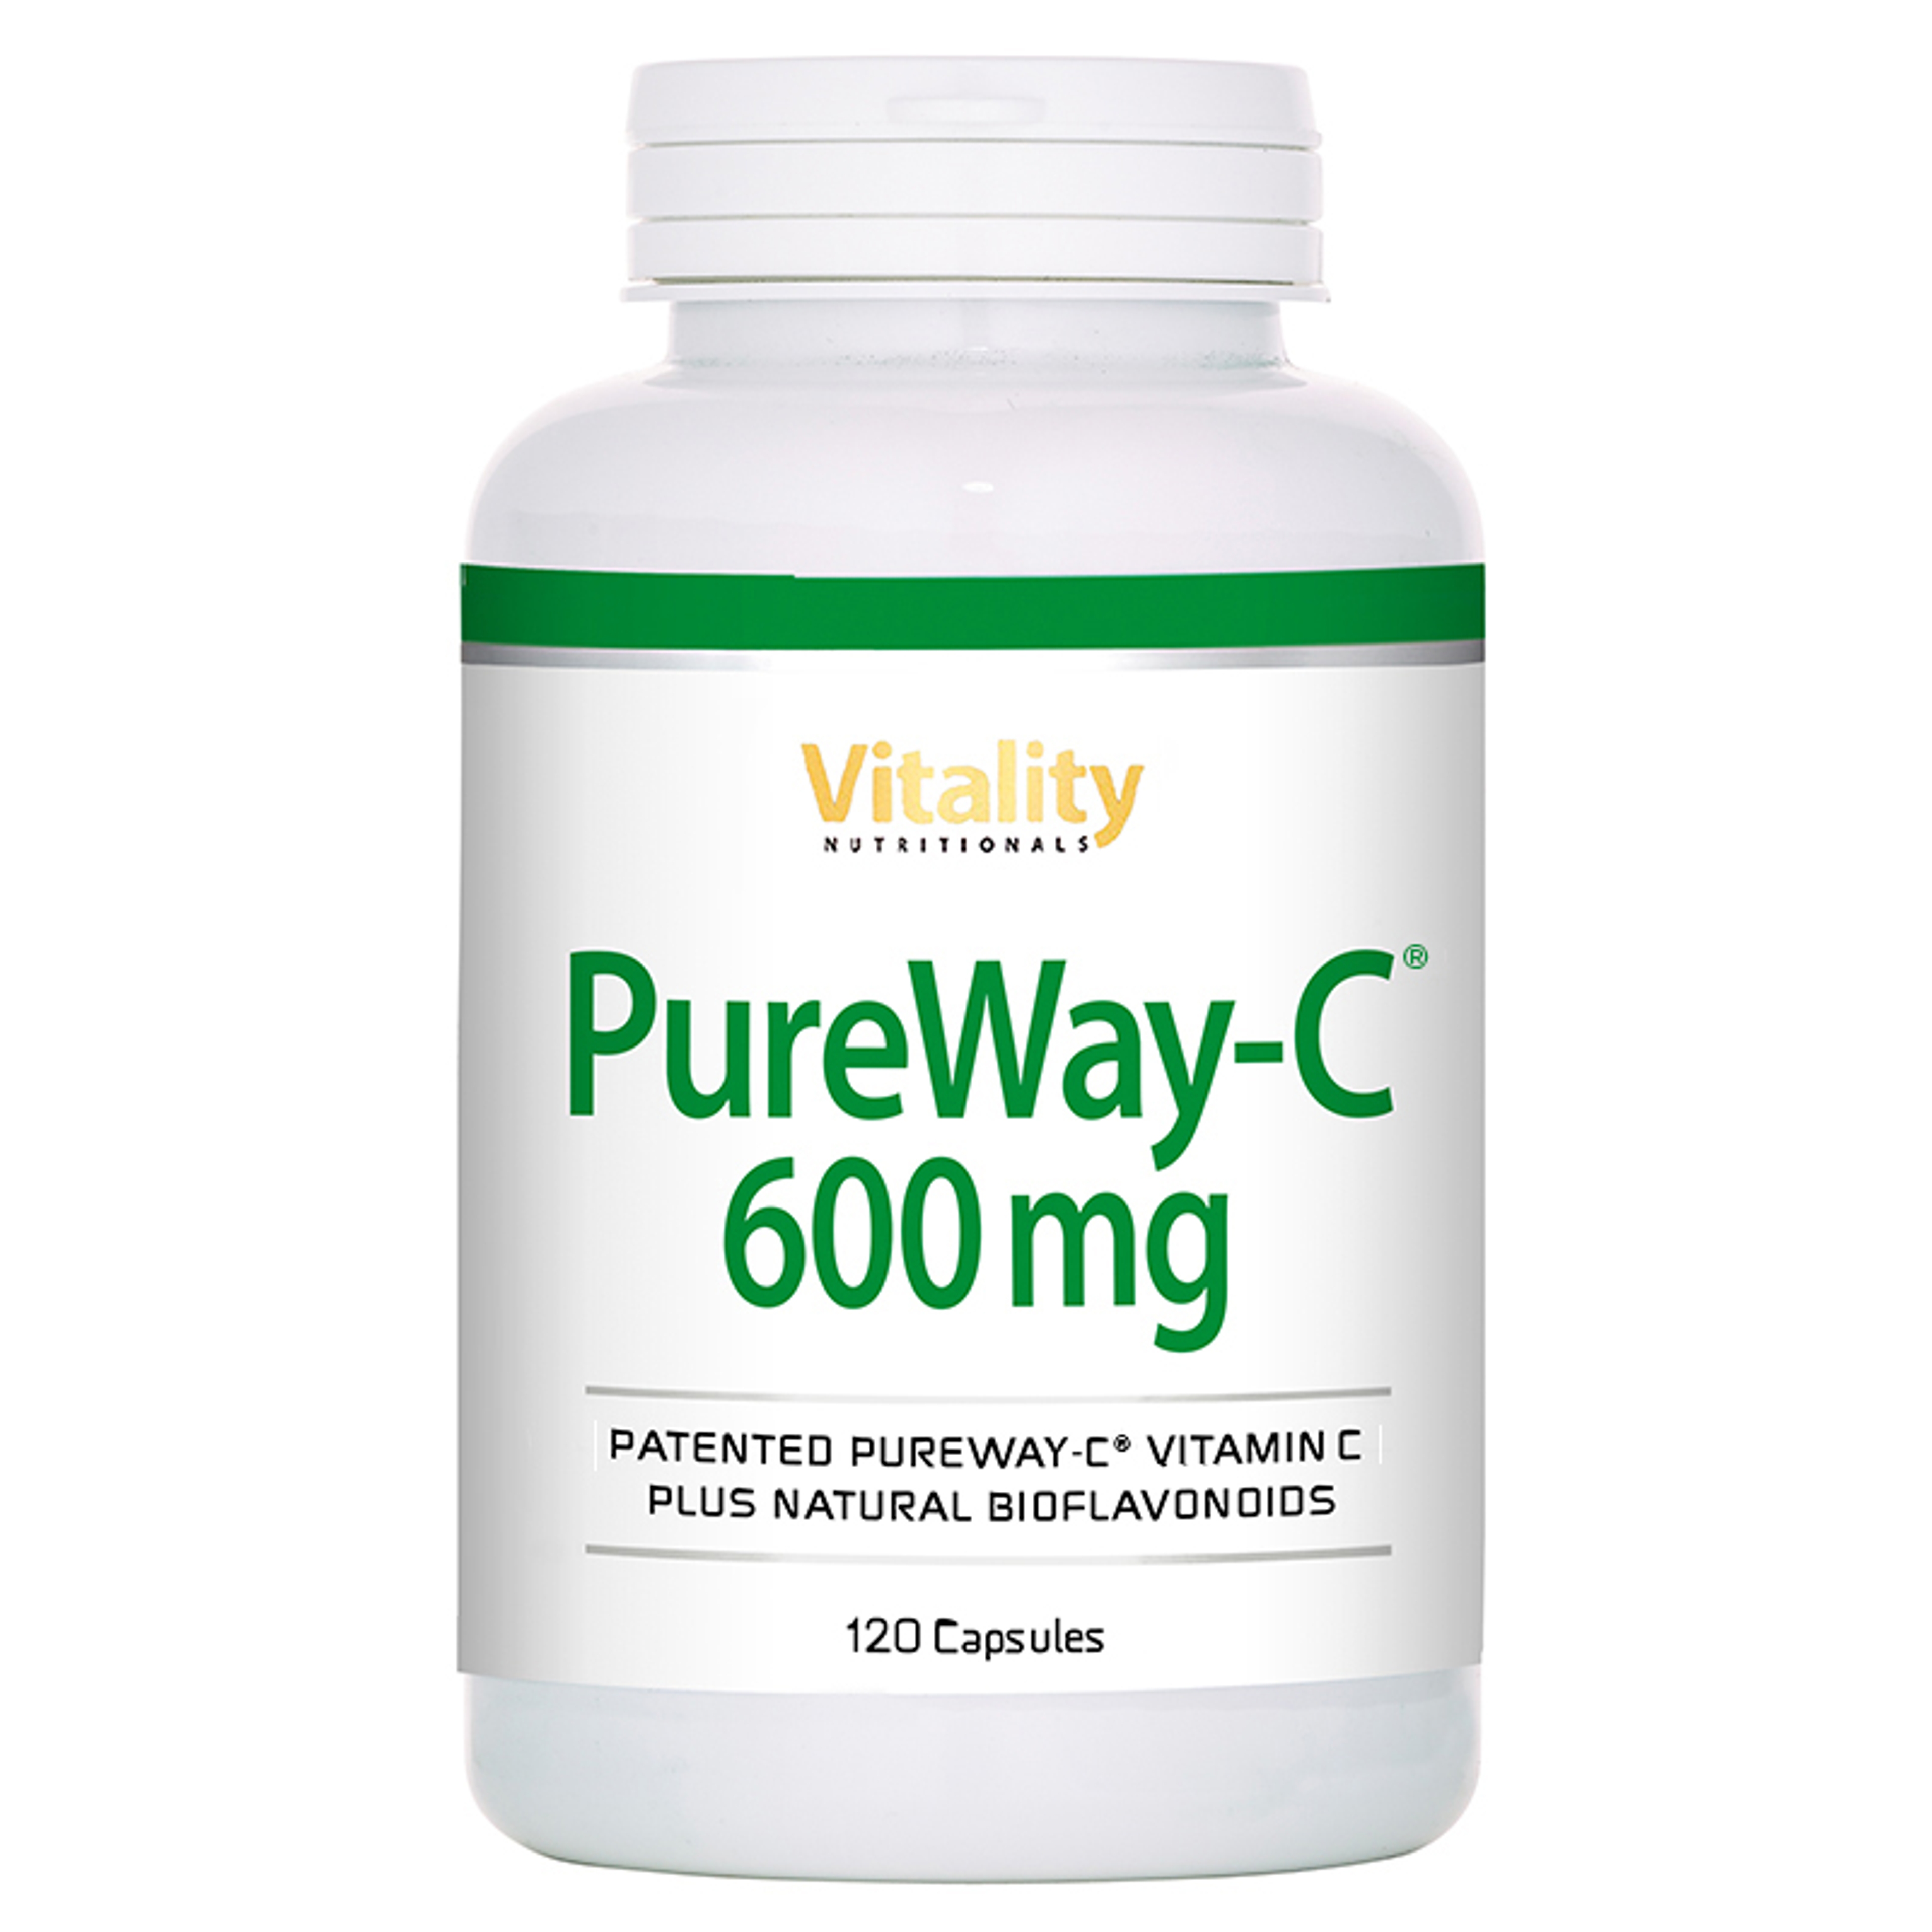 PureWay Vitamin C 600 mg - 120 Capsules